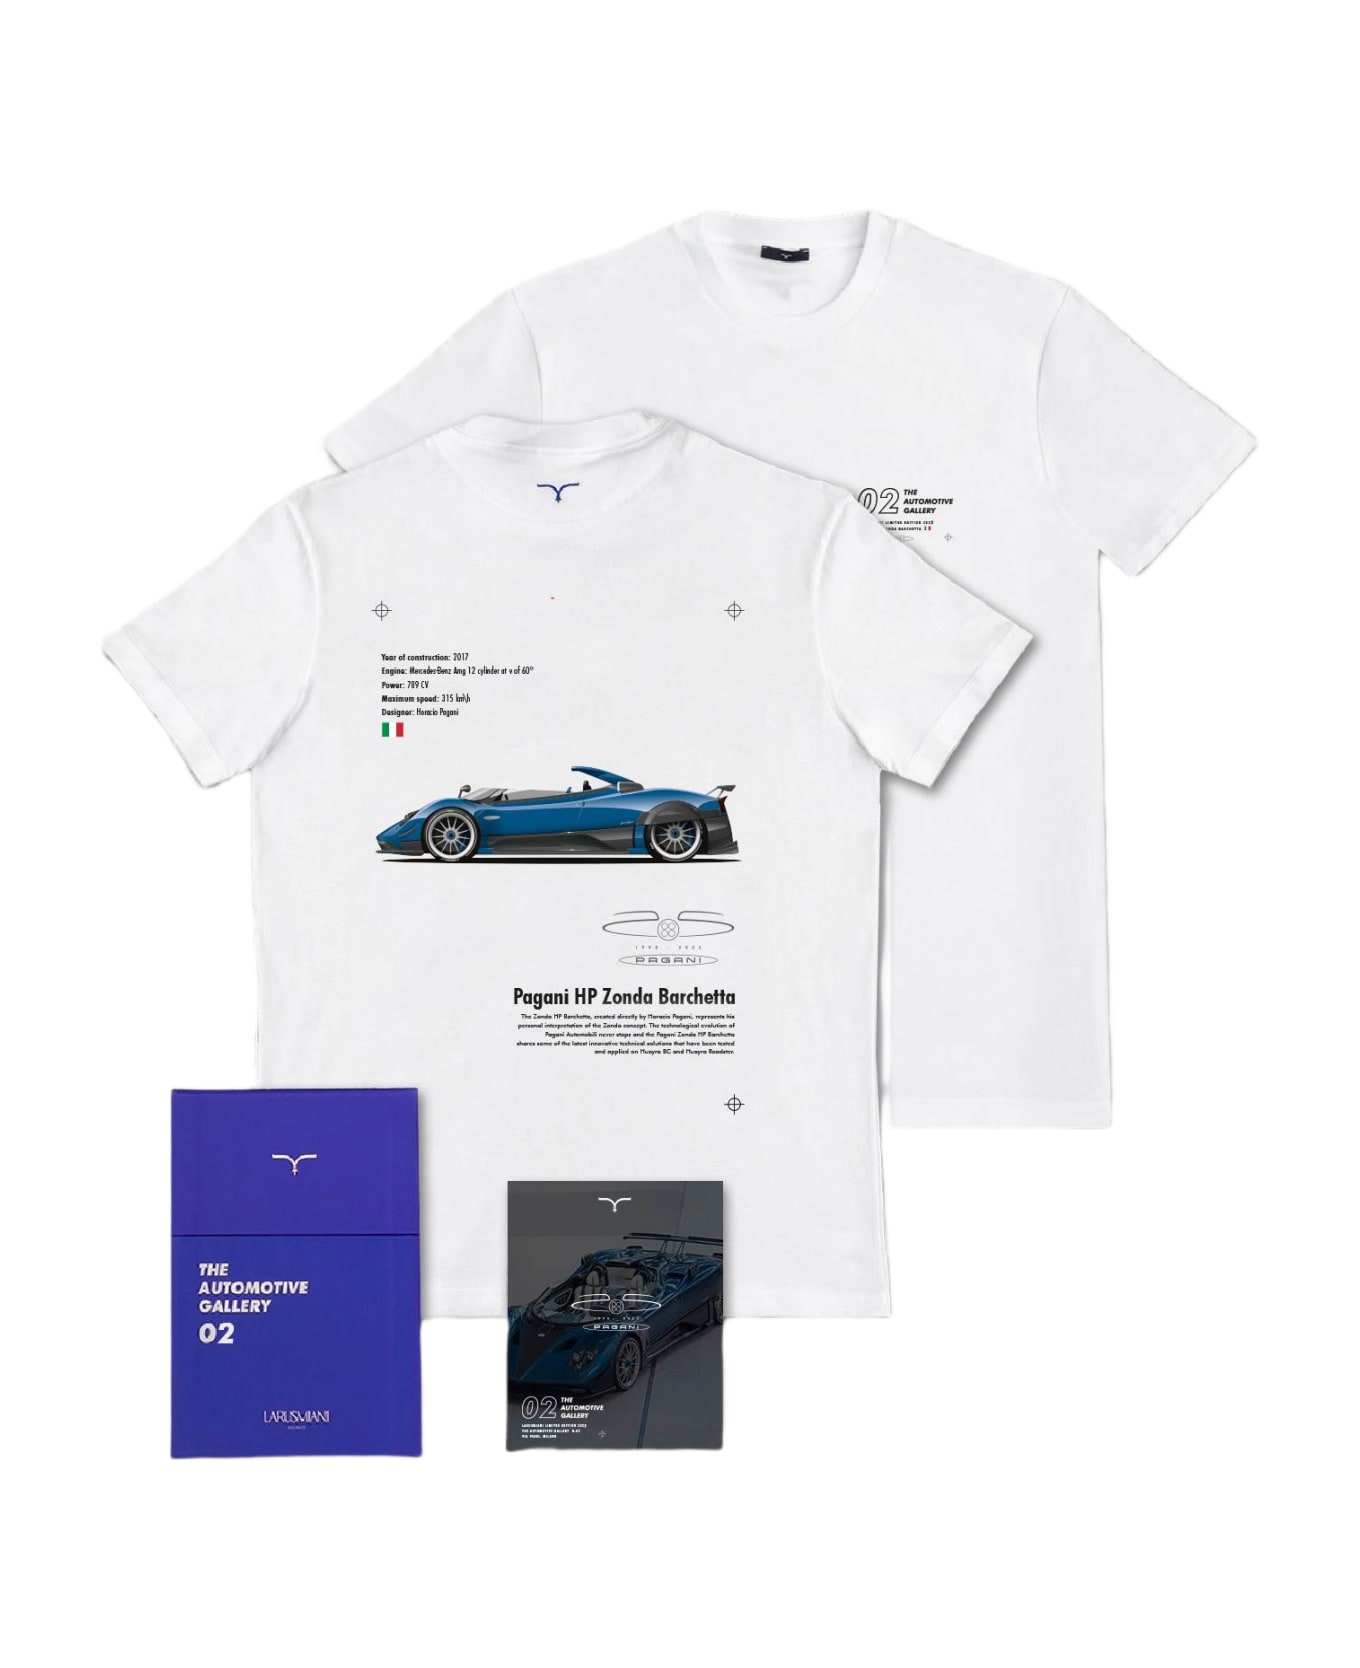 Larusmiani The Automotive Gallery - 02. Pagani Hp Barchetta T-Shirt - White シャツ